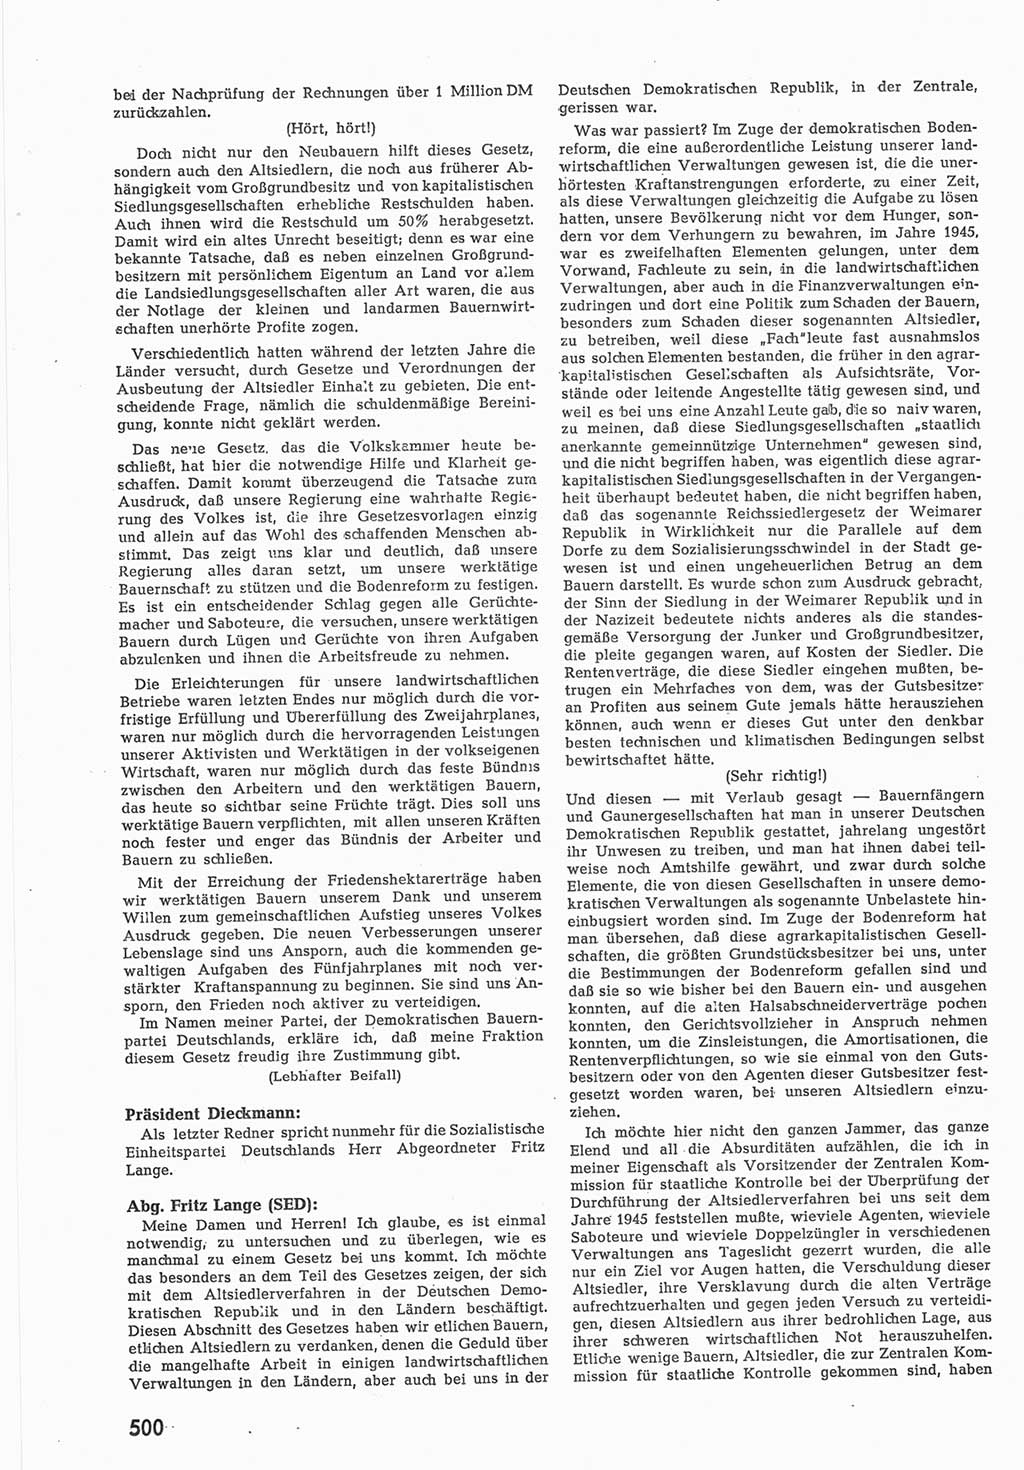 Provisorische Volkskammer (VK) der Deutschen Demokratischen Republik (DDR) 1949-1950, Dokument 518 (Prov. VK DDR 1949-1950, Dok. 518)